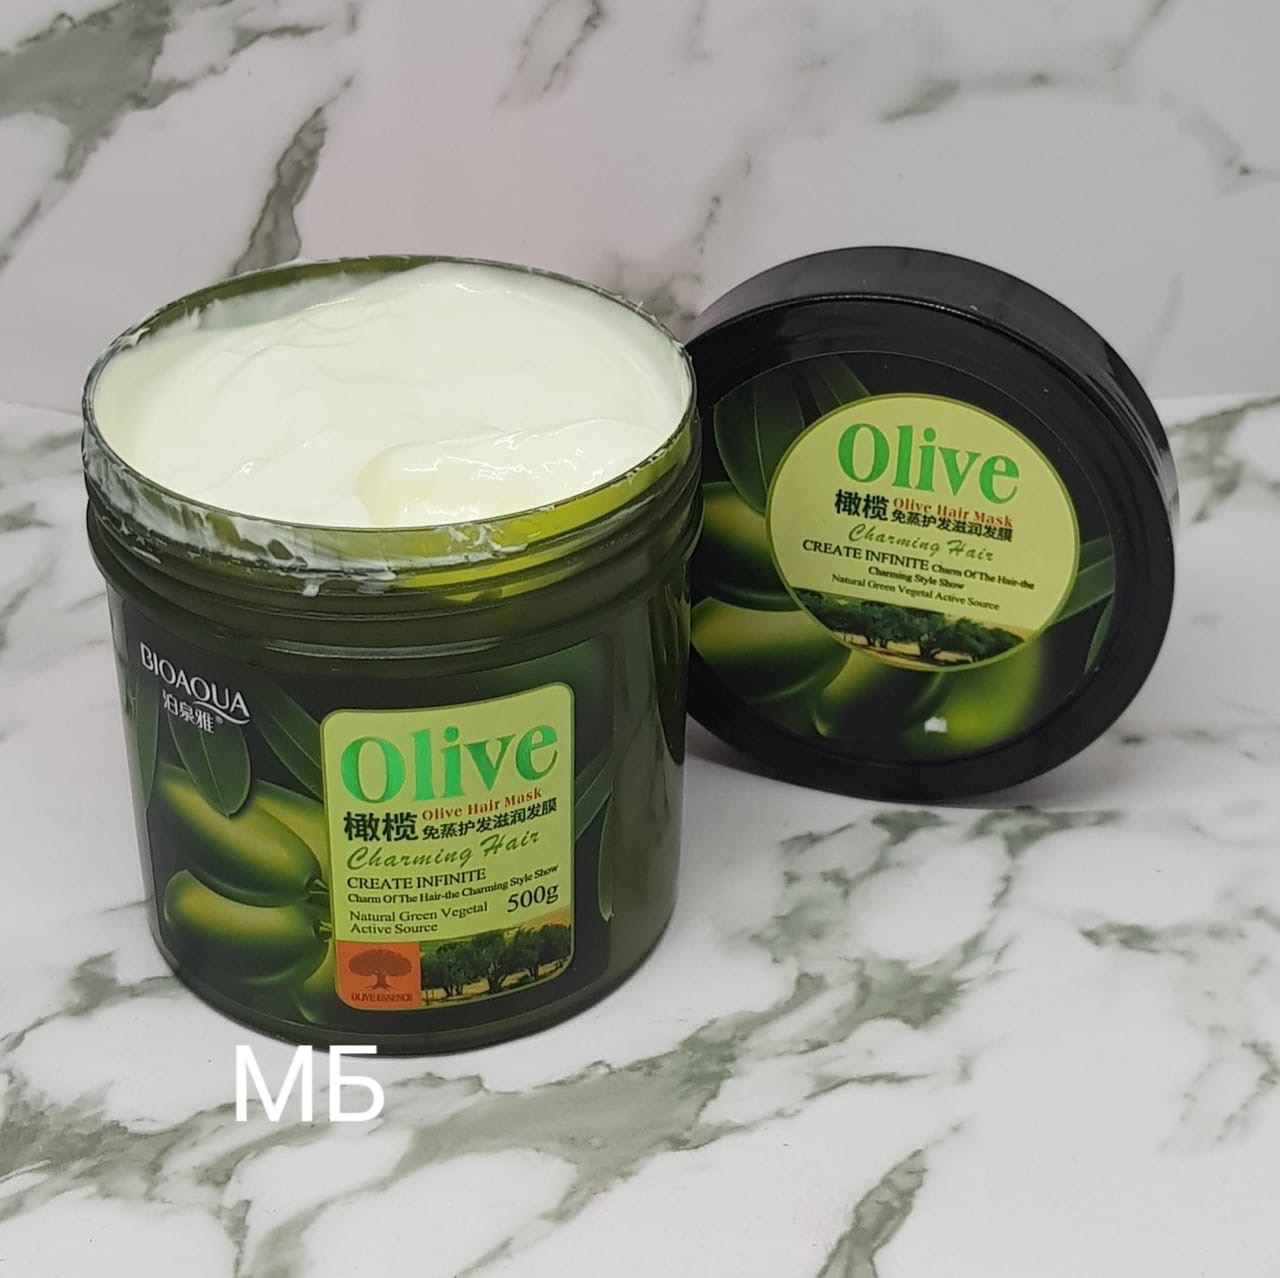 Как сделать маску для волос с оливковым маслом? - оливковые масла из испании